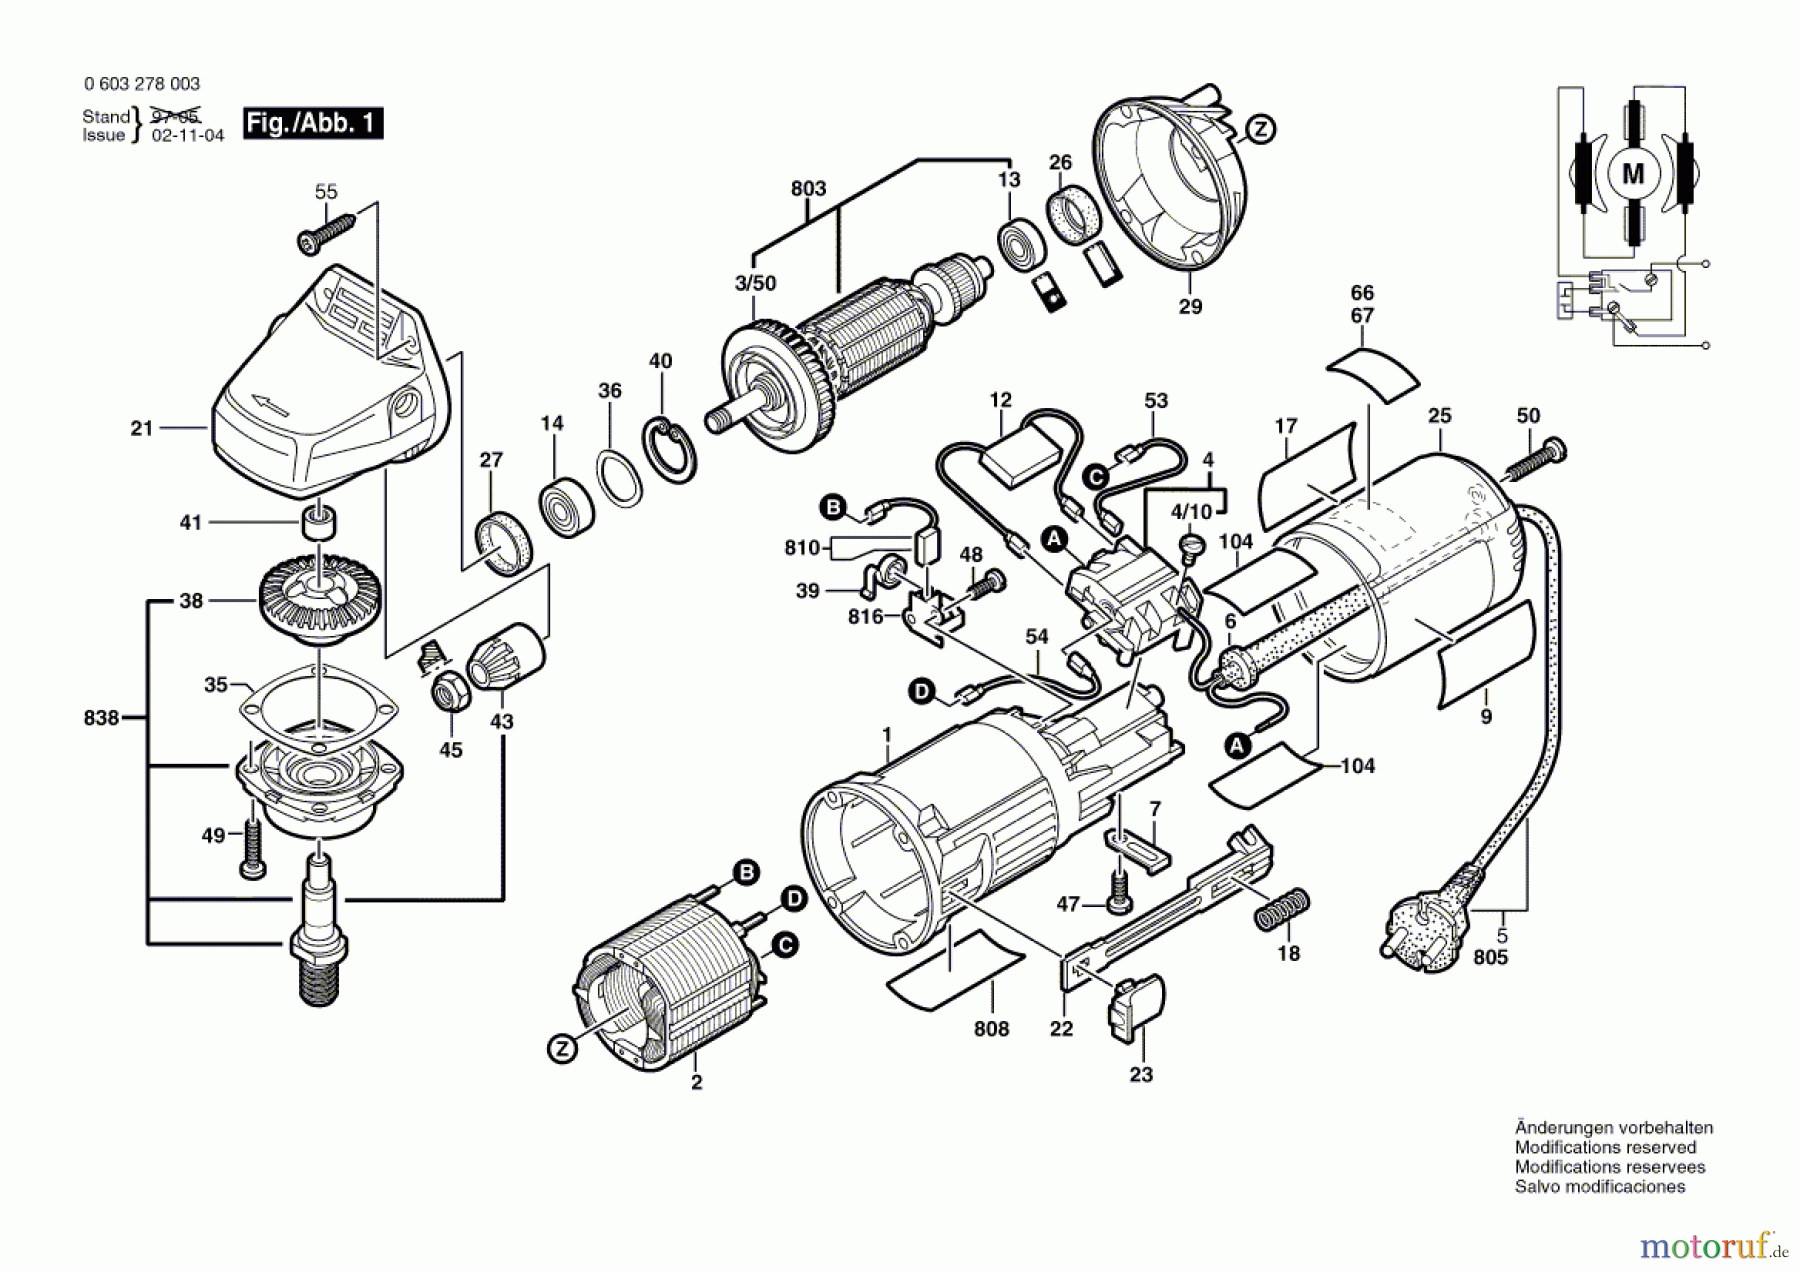  Bosch Werkzeug Hw-Winkelschleifer PWS 5-115 Seite 1